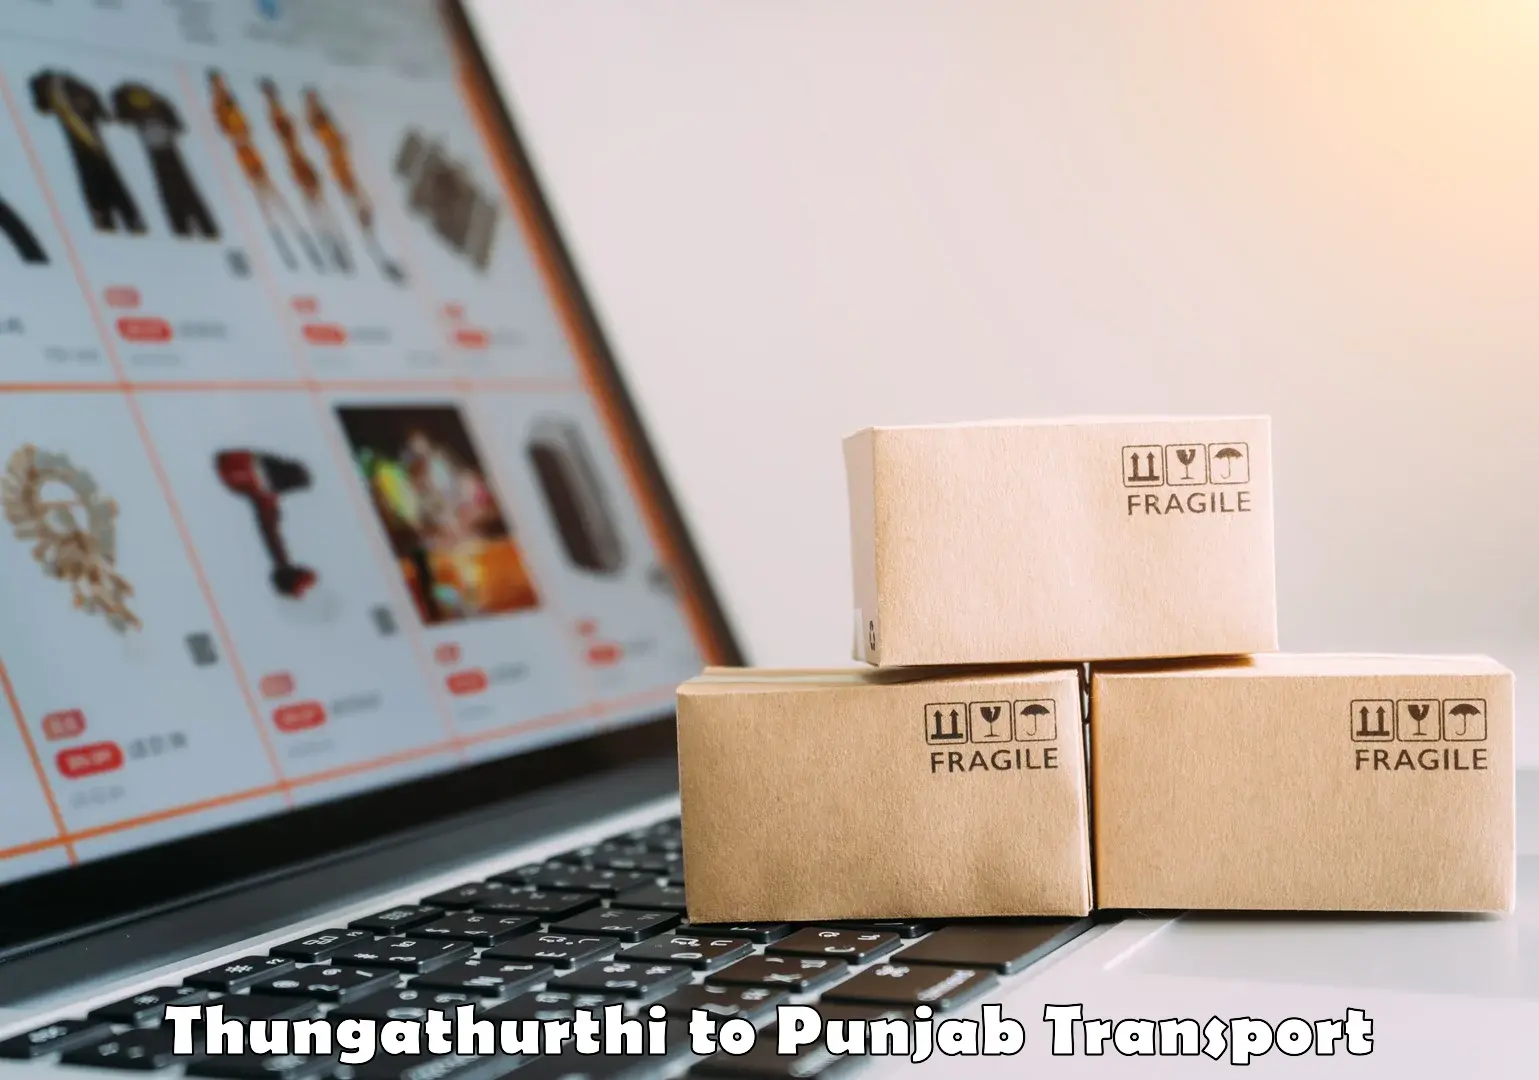 Daily transport service Thungathurthi to Amritsar